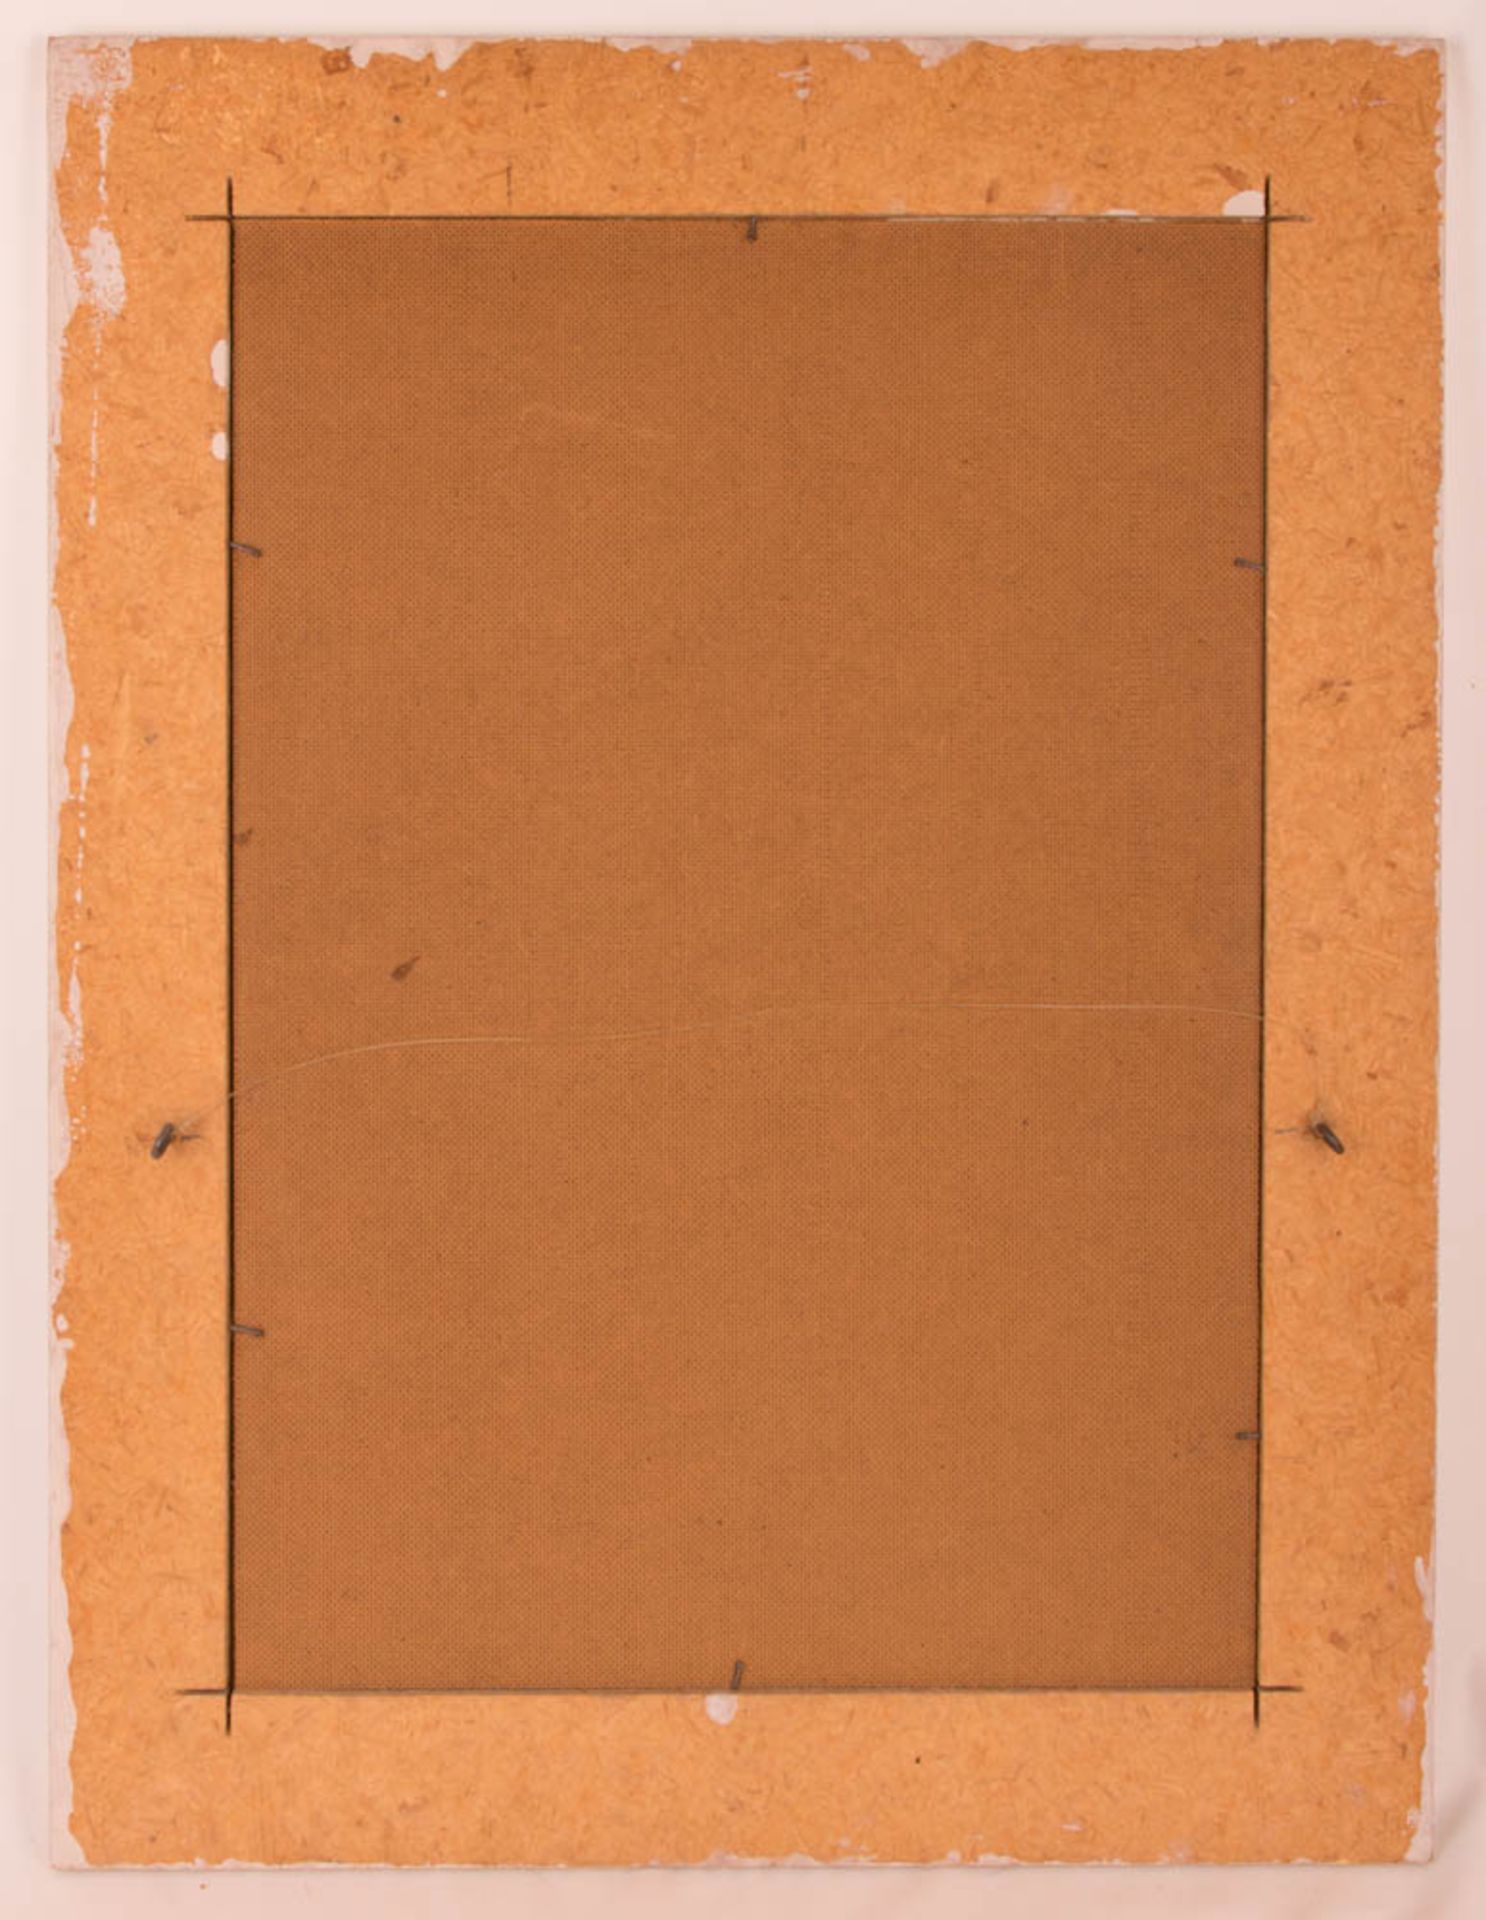 Gerenot Richter, abstrakte Komposition, Acryl auf Hartfaserplatte, 1962. - Bild 6 aus 6